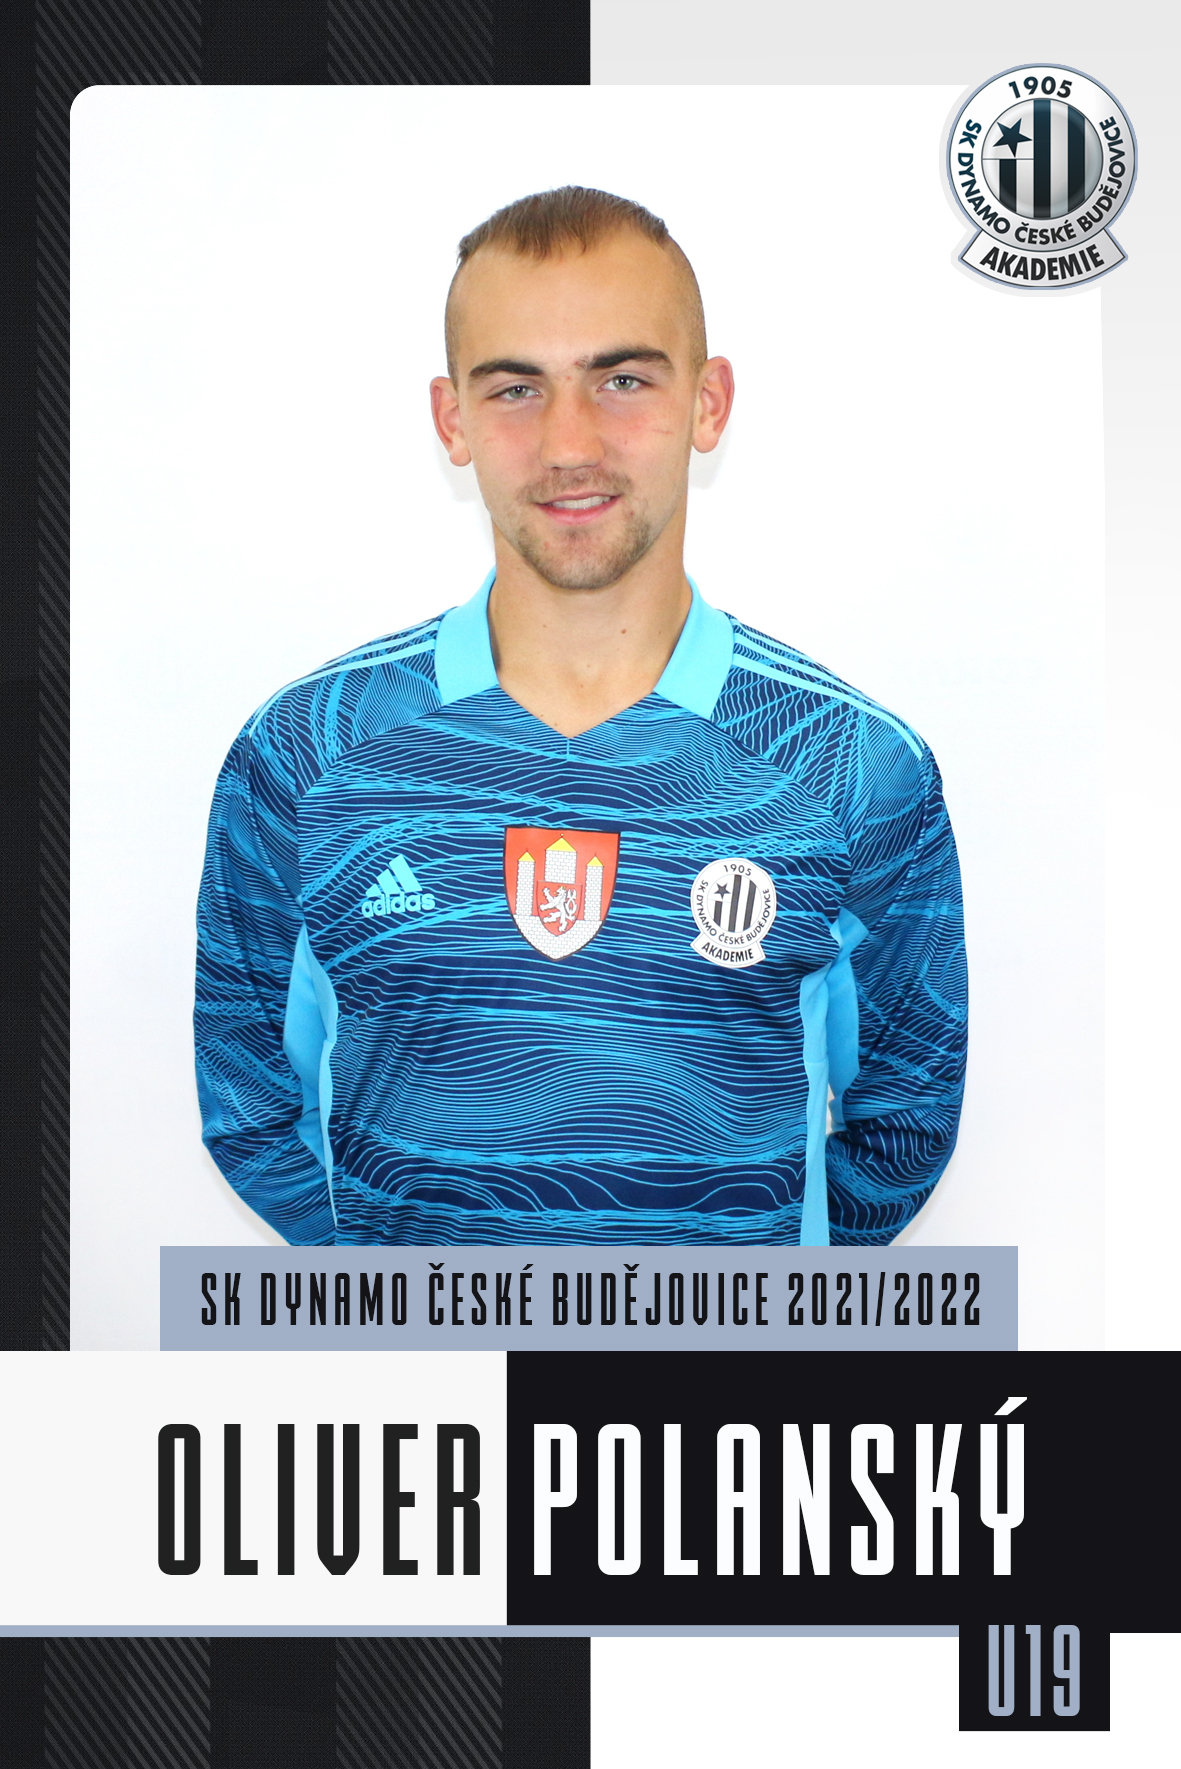 Polanský Oliver